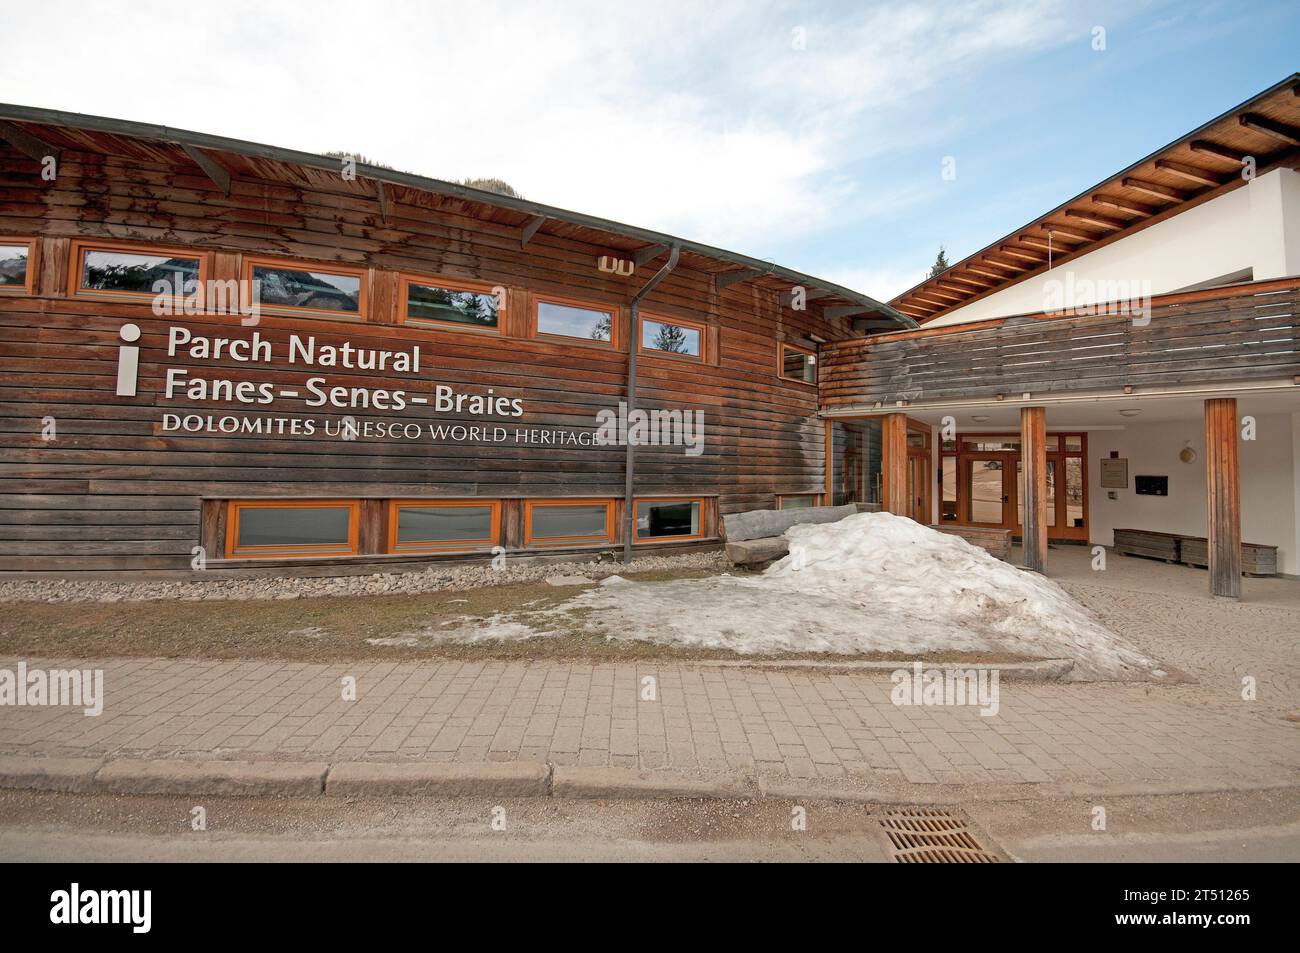 Centro visite del Parco naturale Fanes-Senes-Braies, San Vigilio di Marebbe, Trentino-alto Adige, Italia Foto Stock